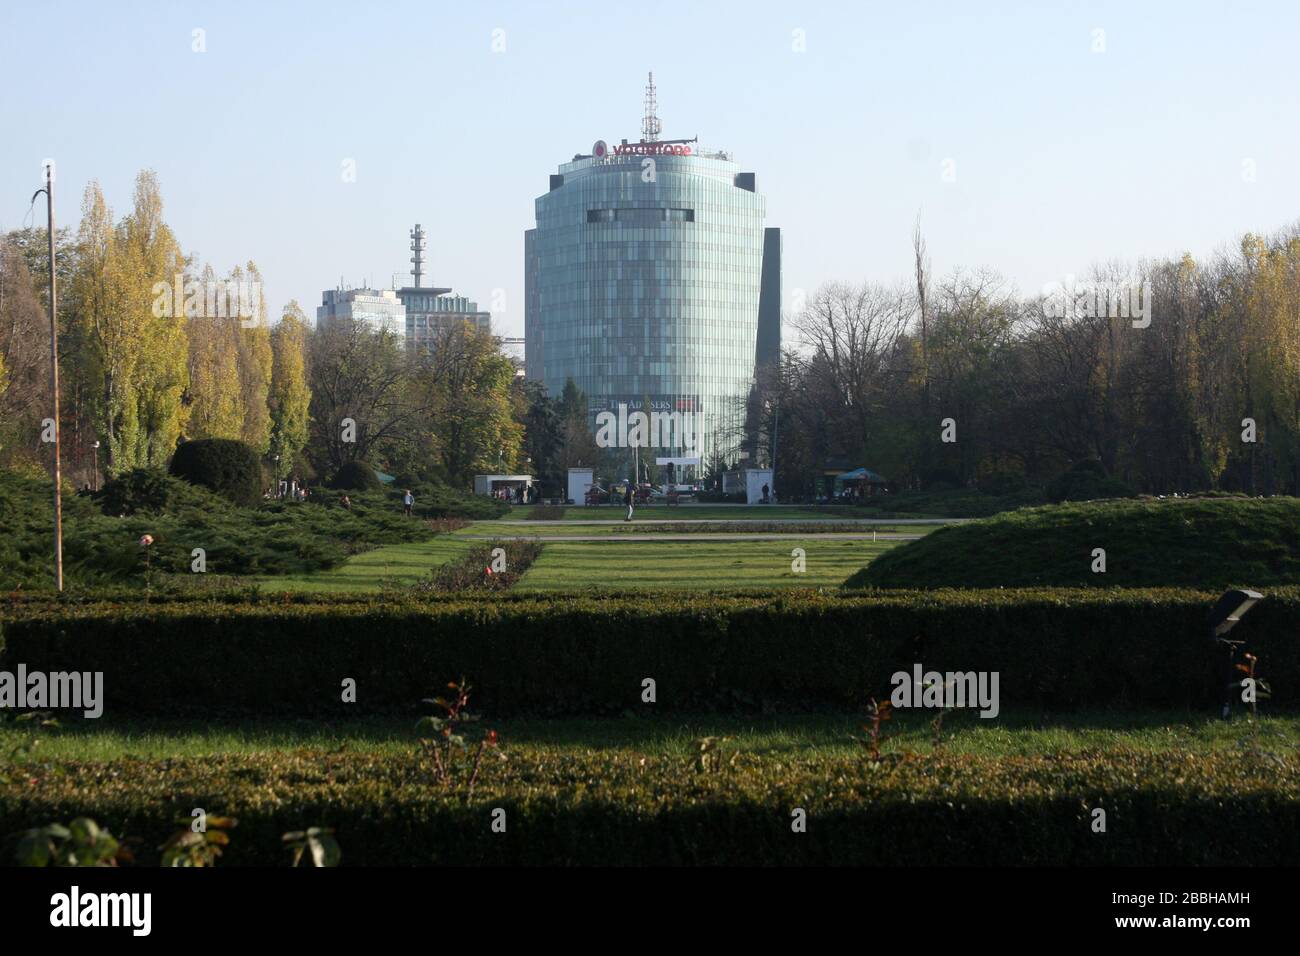 Bâtiment principal de Vodafone et quartier général de la télévision roumaine vue du parc Herastrau (roi Michael I) à Bucarest, Roumanie Banque D'Images